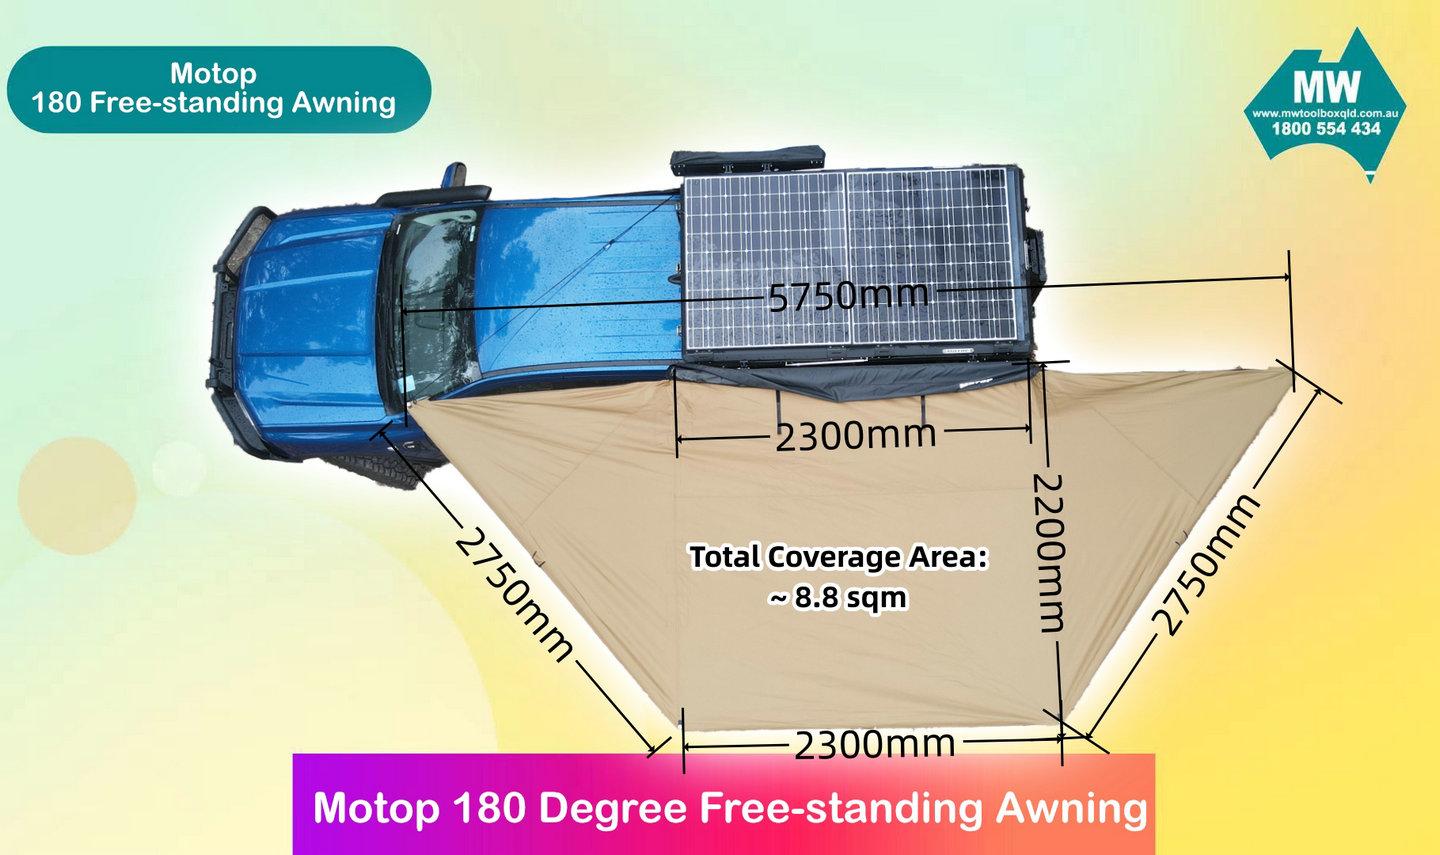 Motop-180-Free-standing-Awning-2